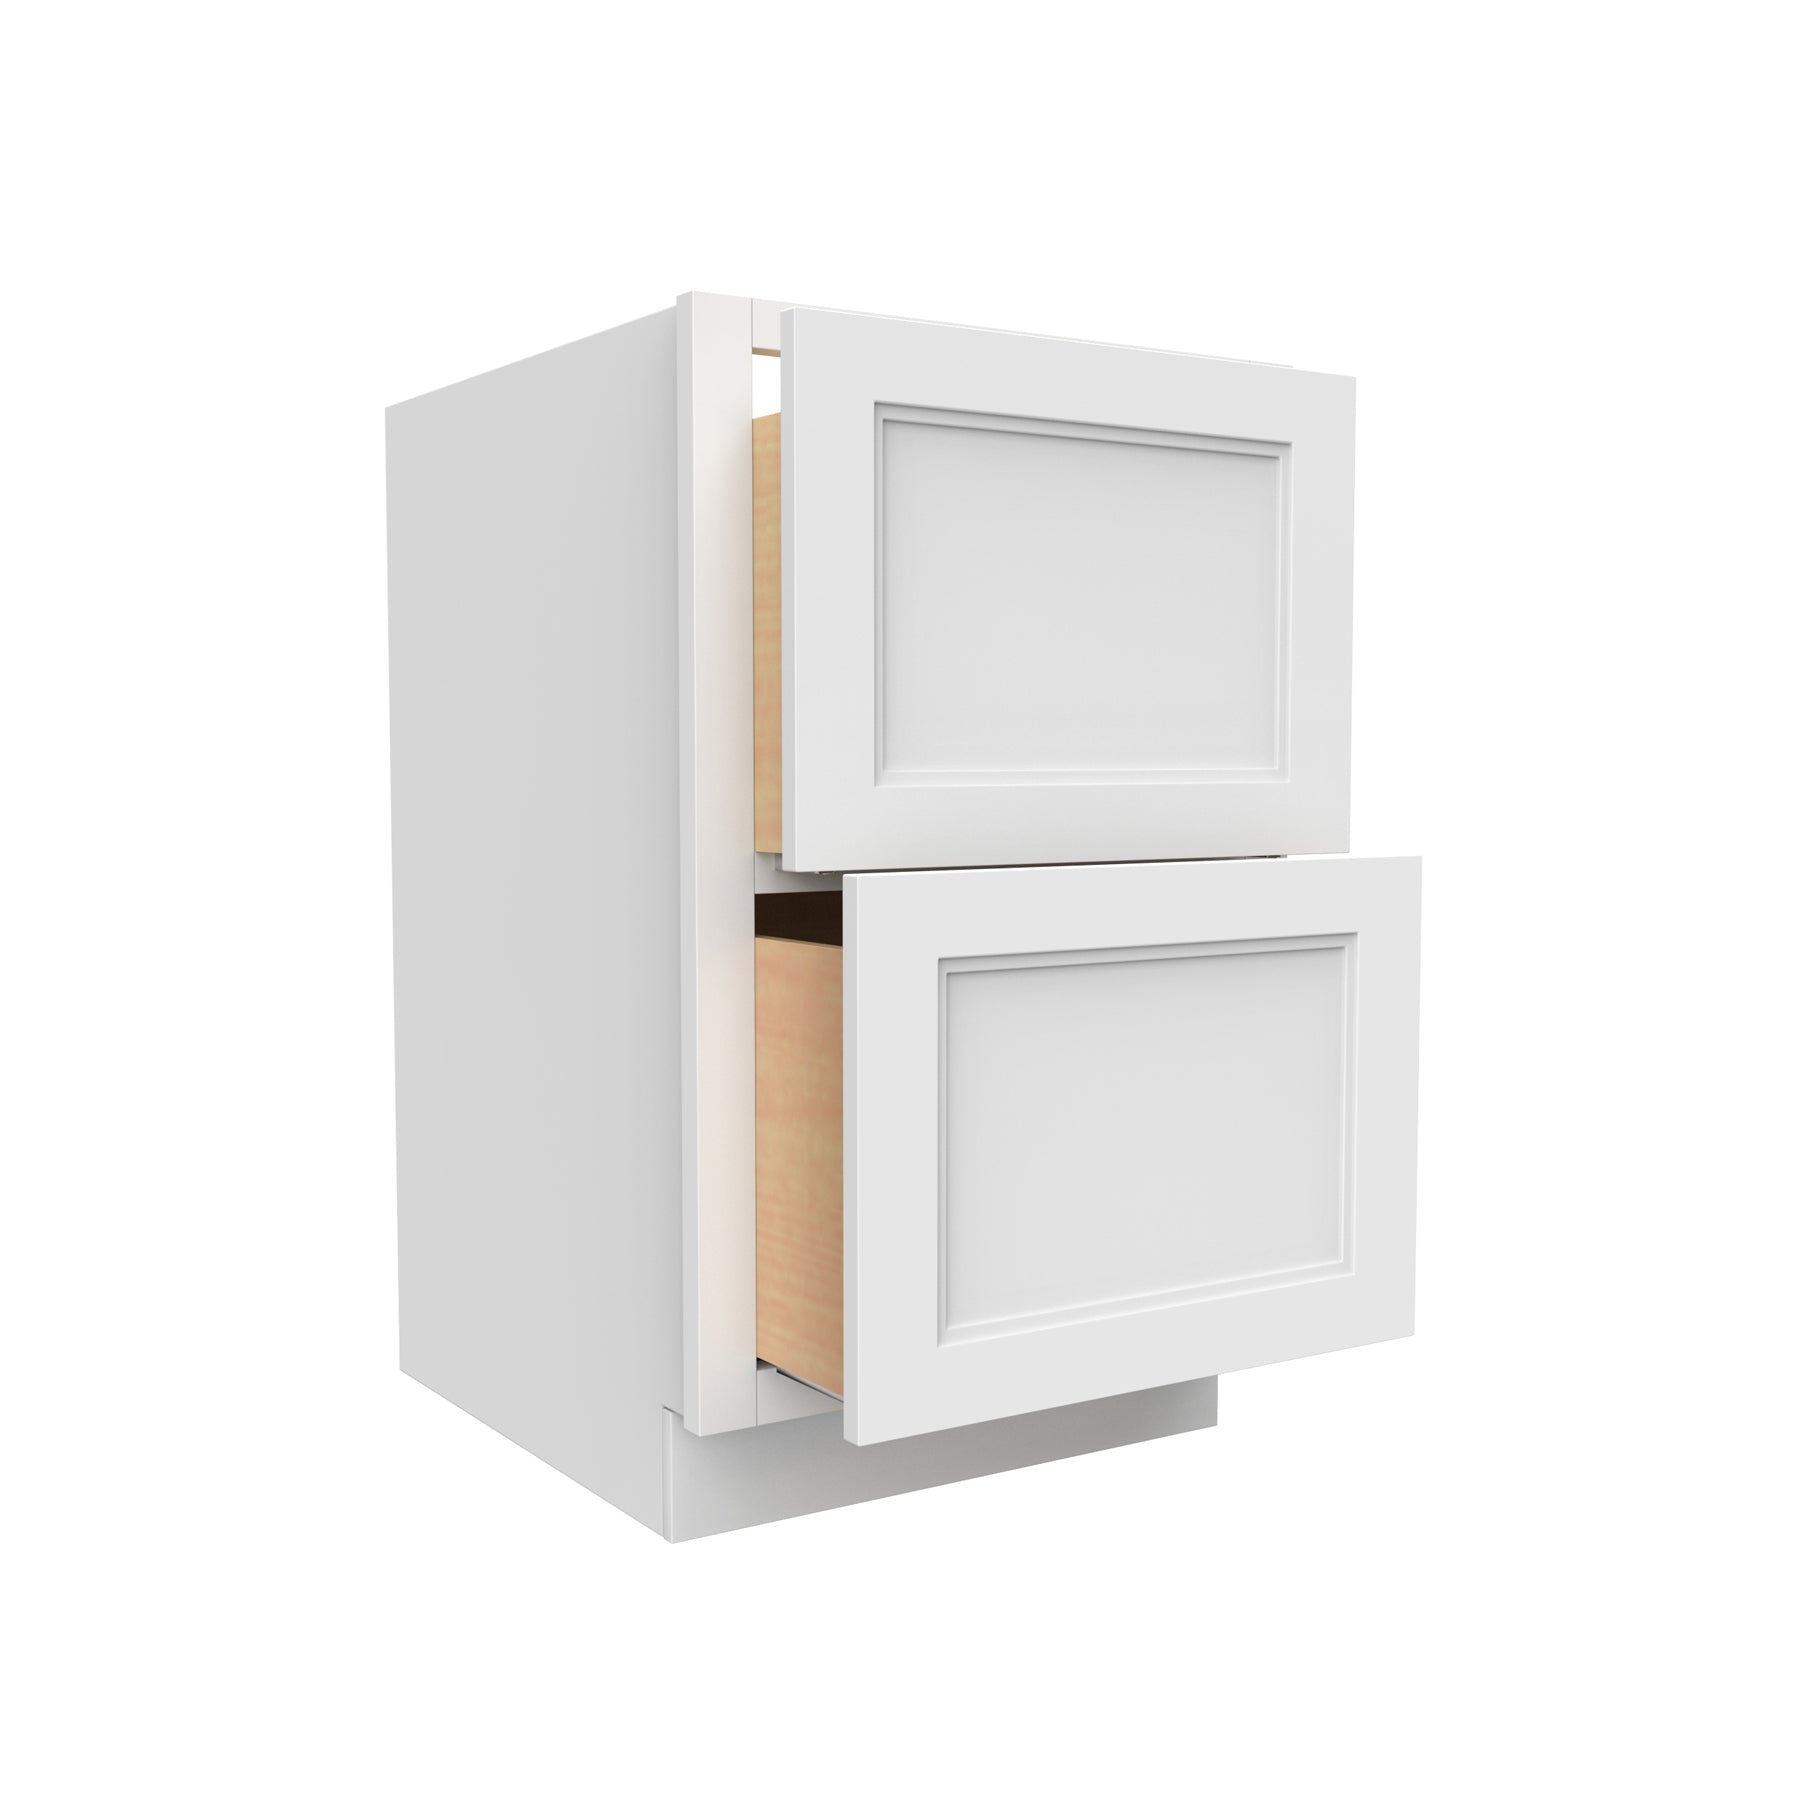 Fashion White - 2 Drawer Base Cabinet | 33"W x 34.5"H x 24"D